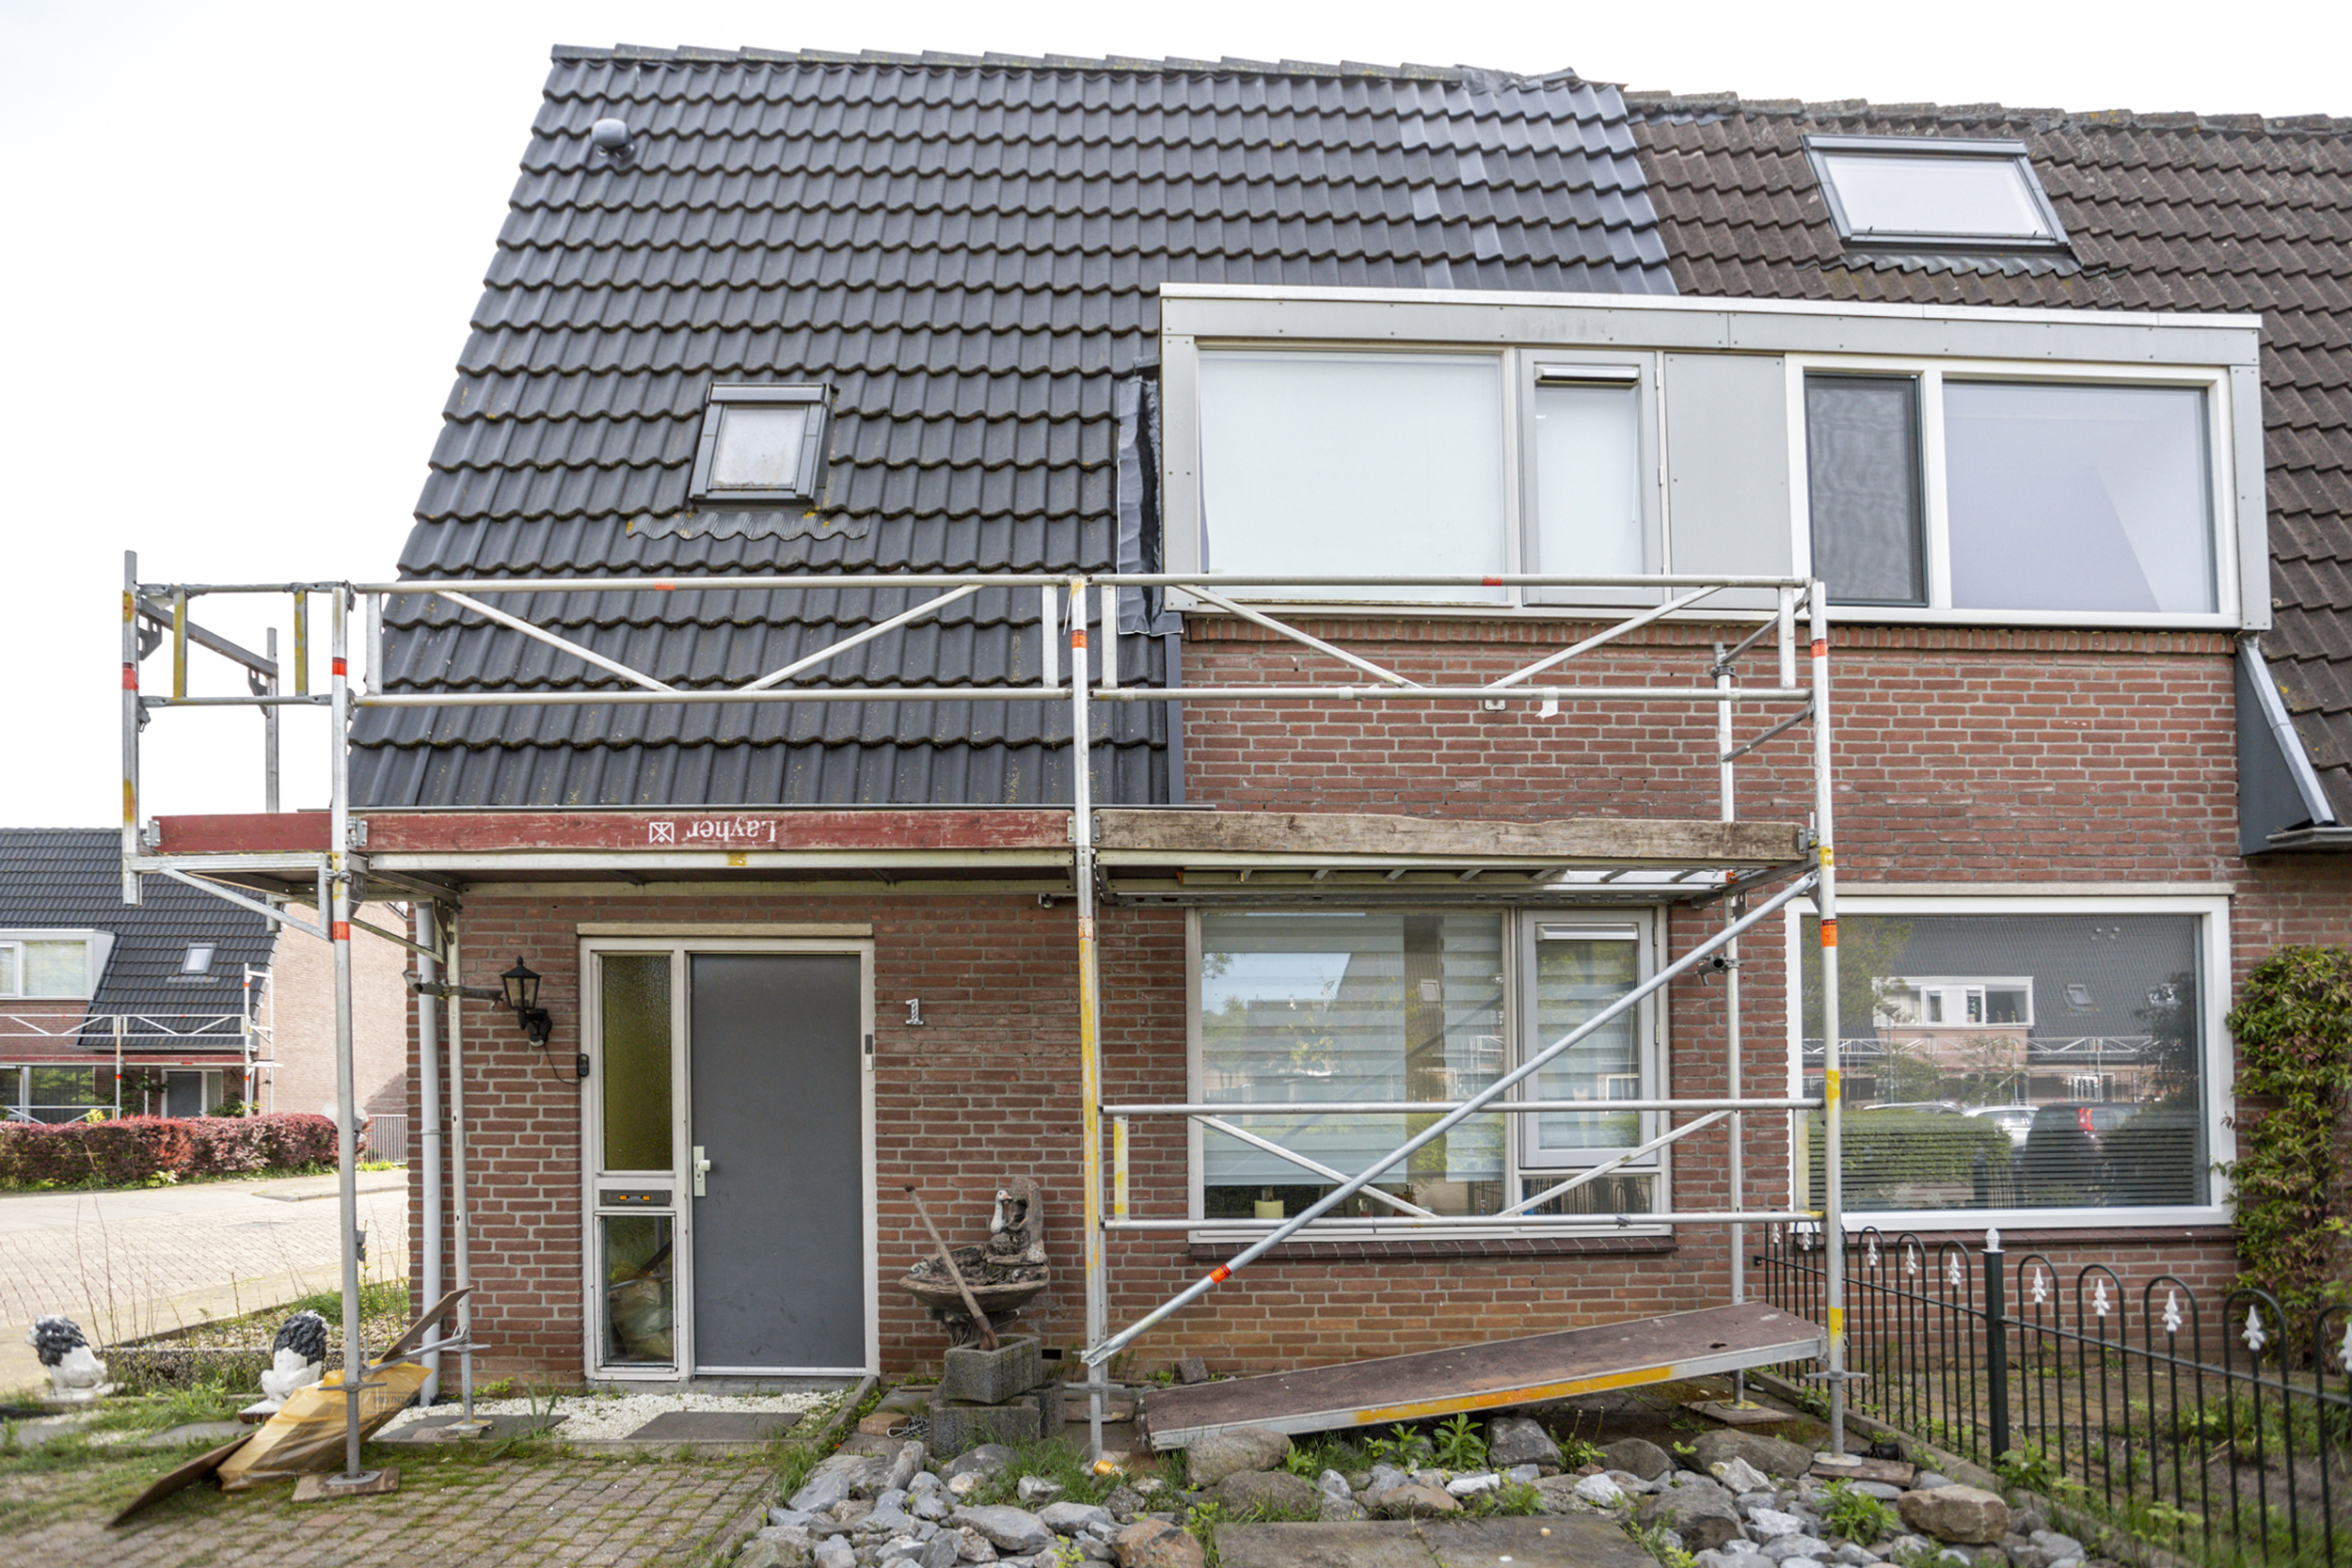 Varendonk 1, 4907 XL Oosterhout, Nederland